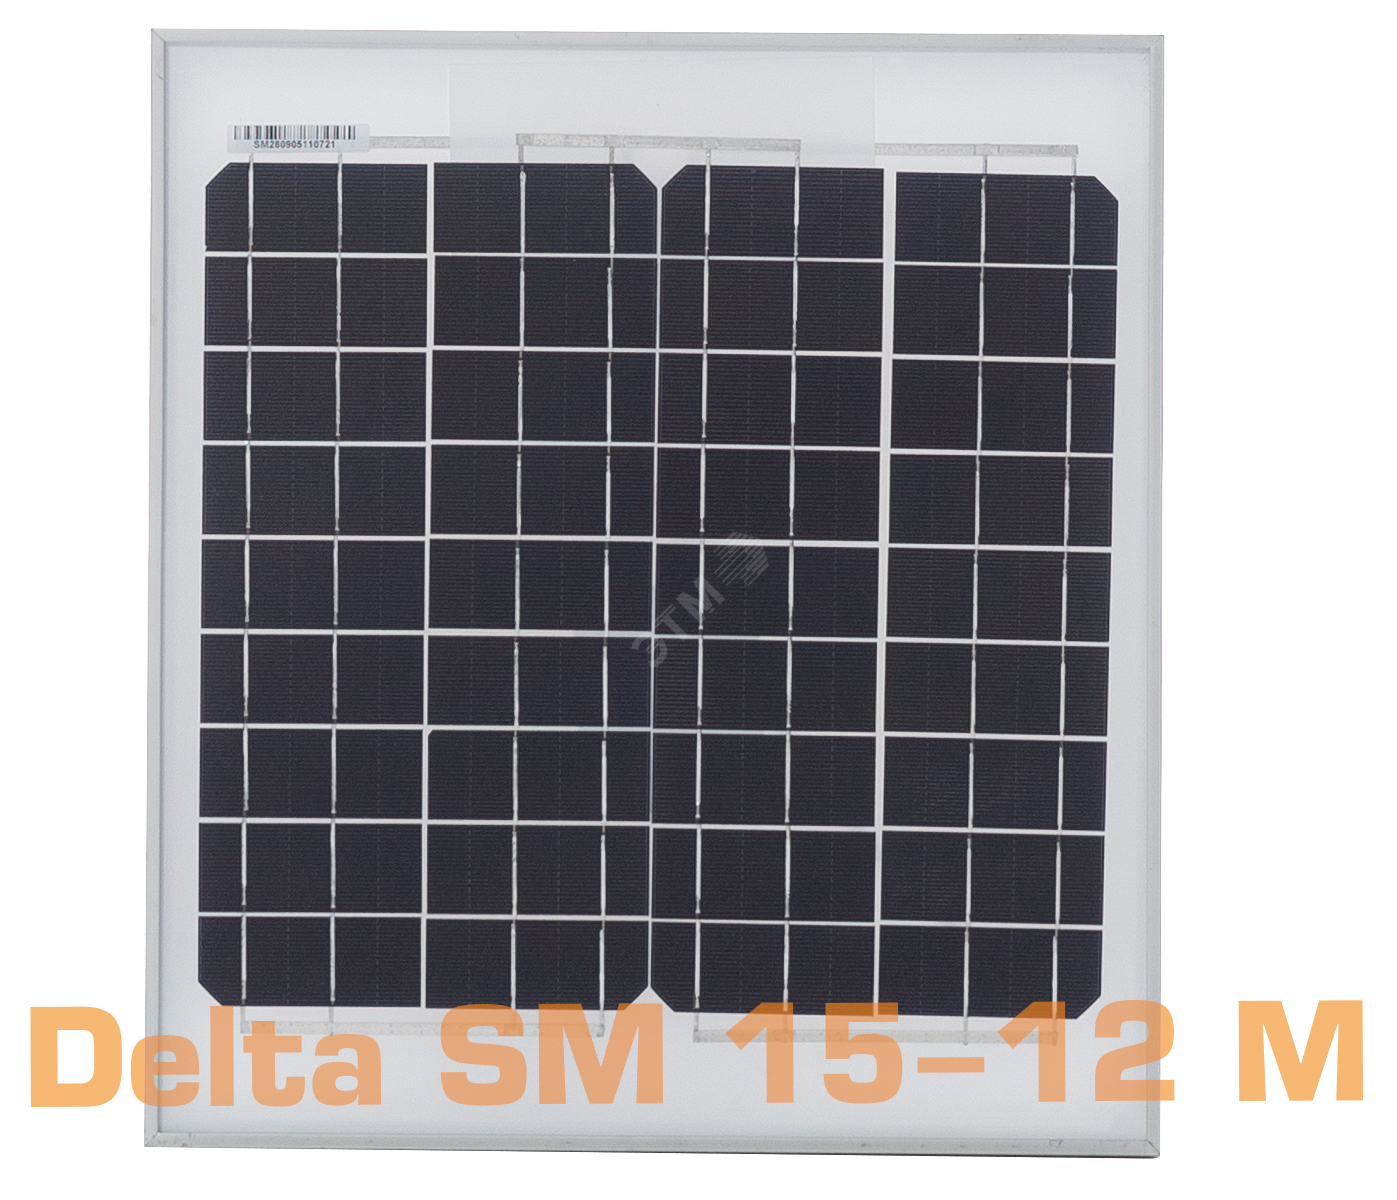 Фотоэлектрический солнечный модуль (ФСМ) SM 15-12 M Delta SM 15-12 M DELTA